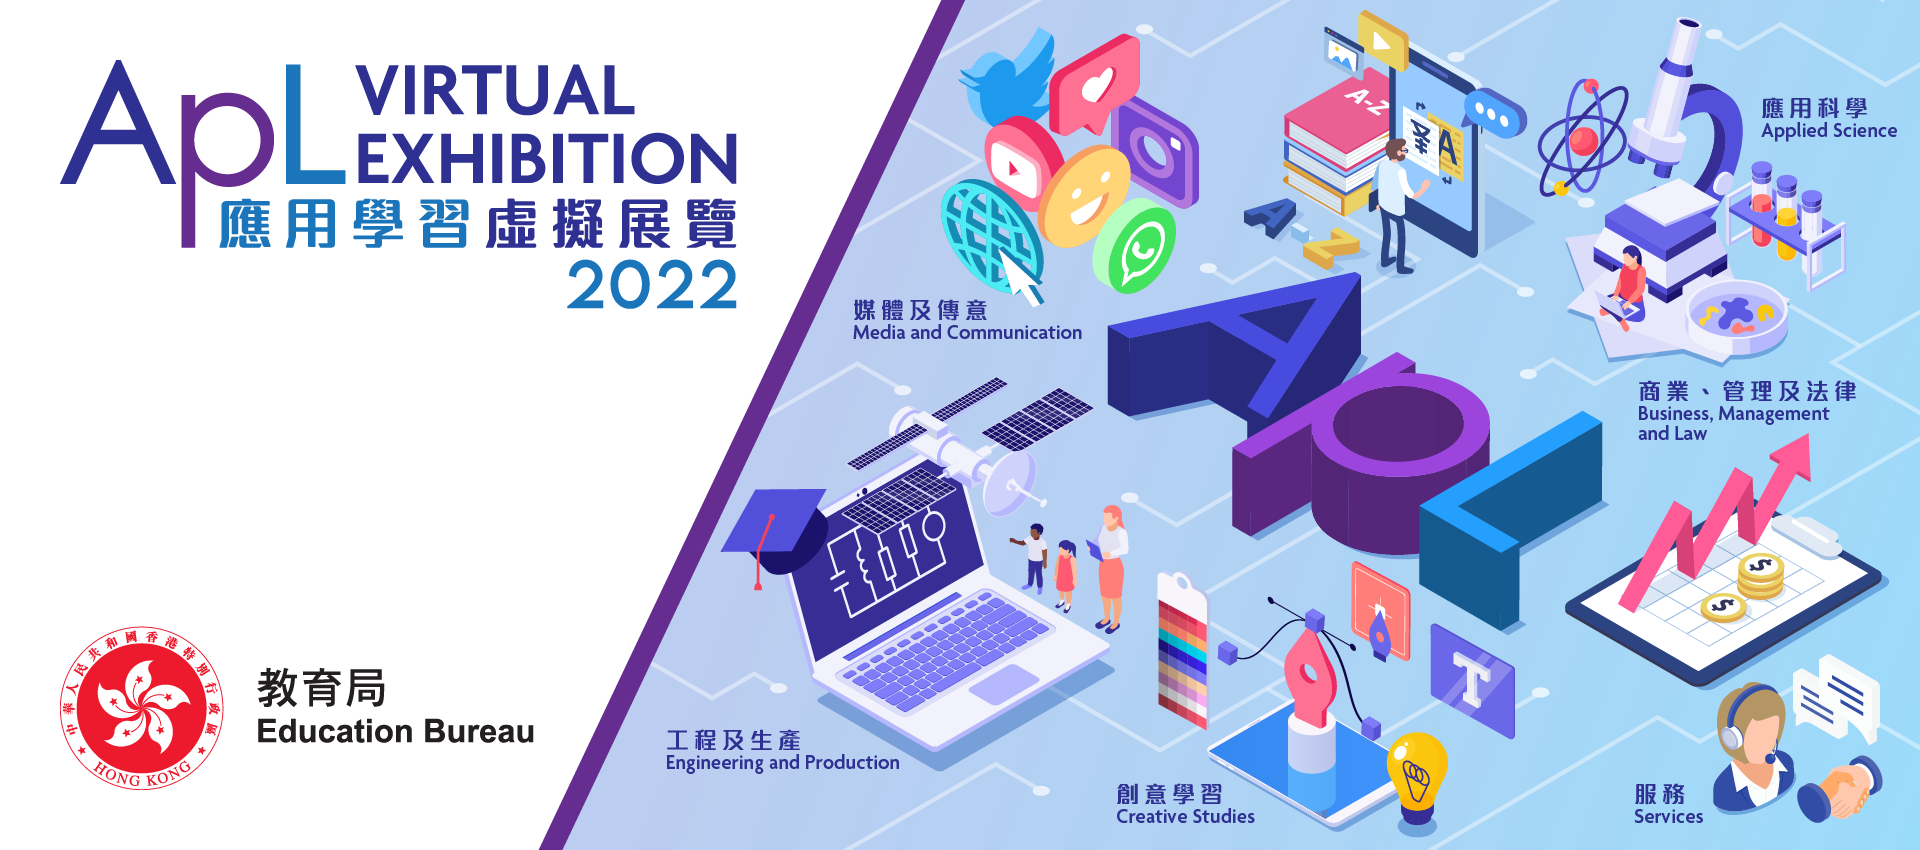 ​教育局舉辦「應用學習虛擬展覽2022」 鼓勵學生踴躍參觀